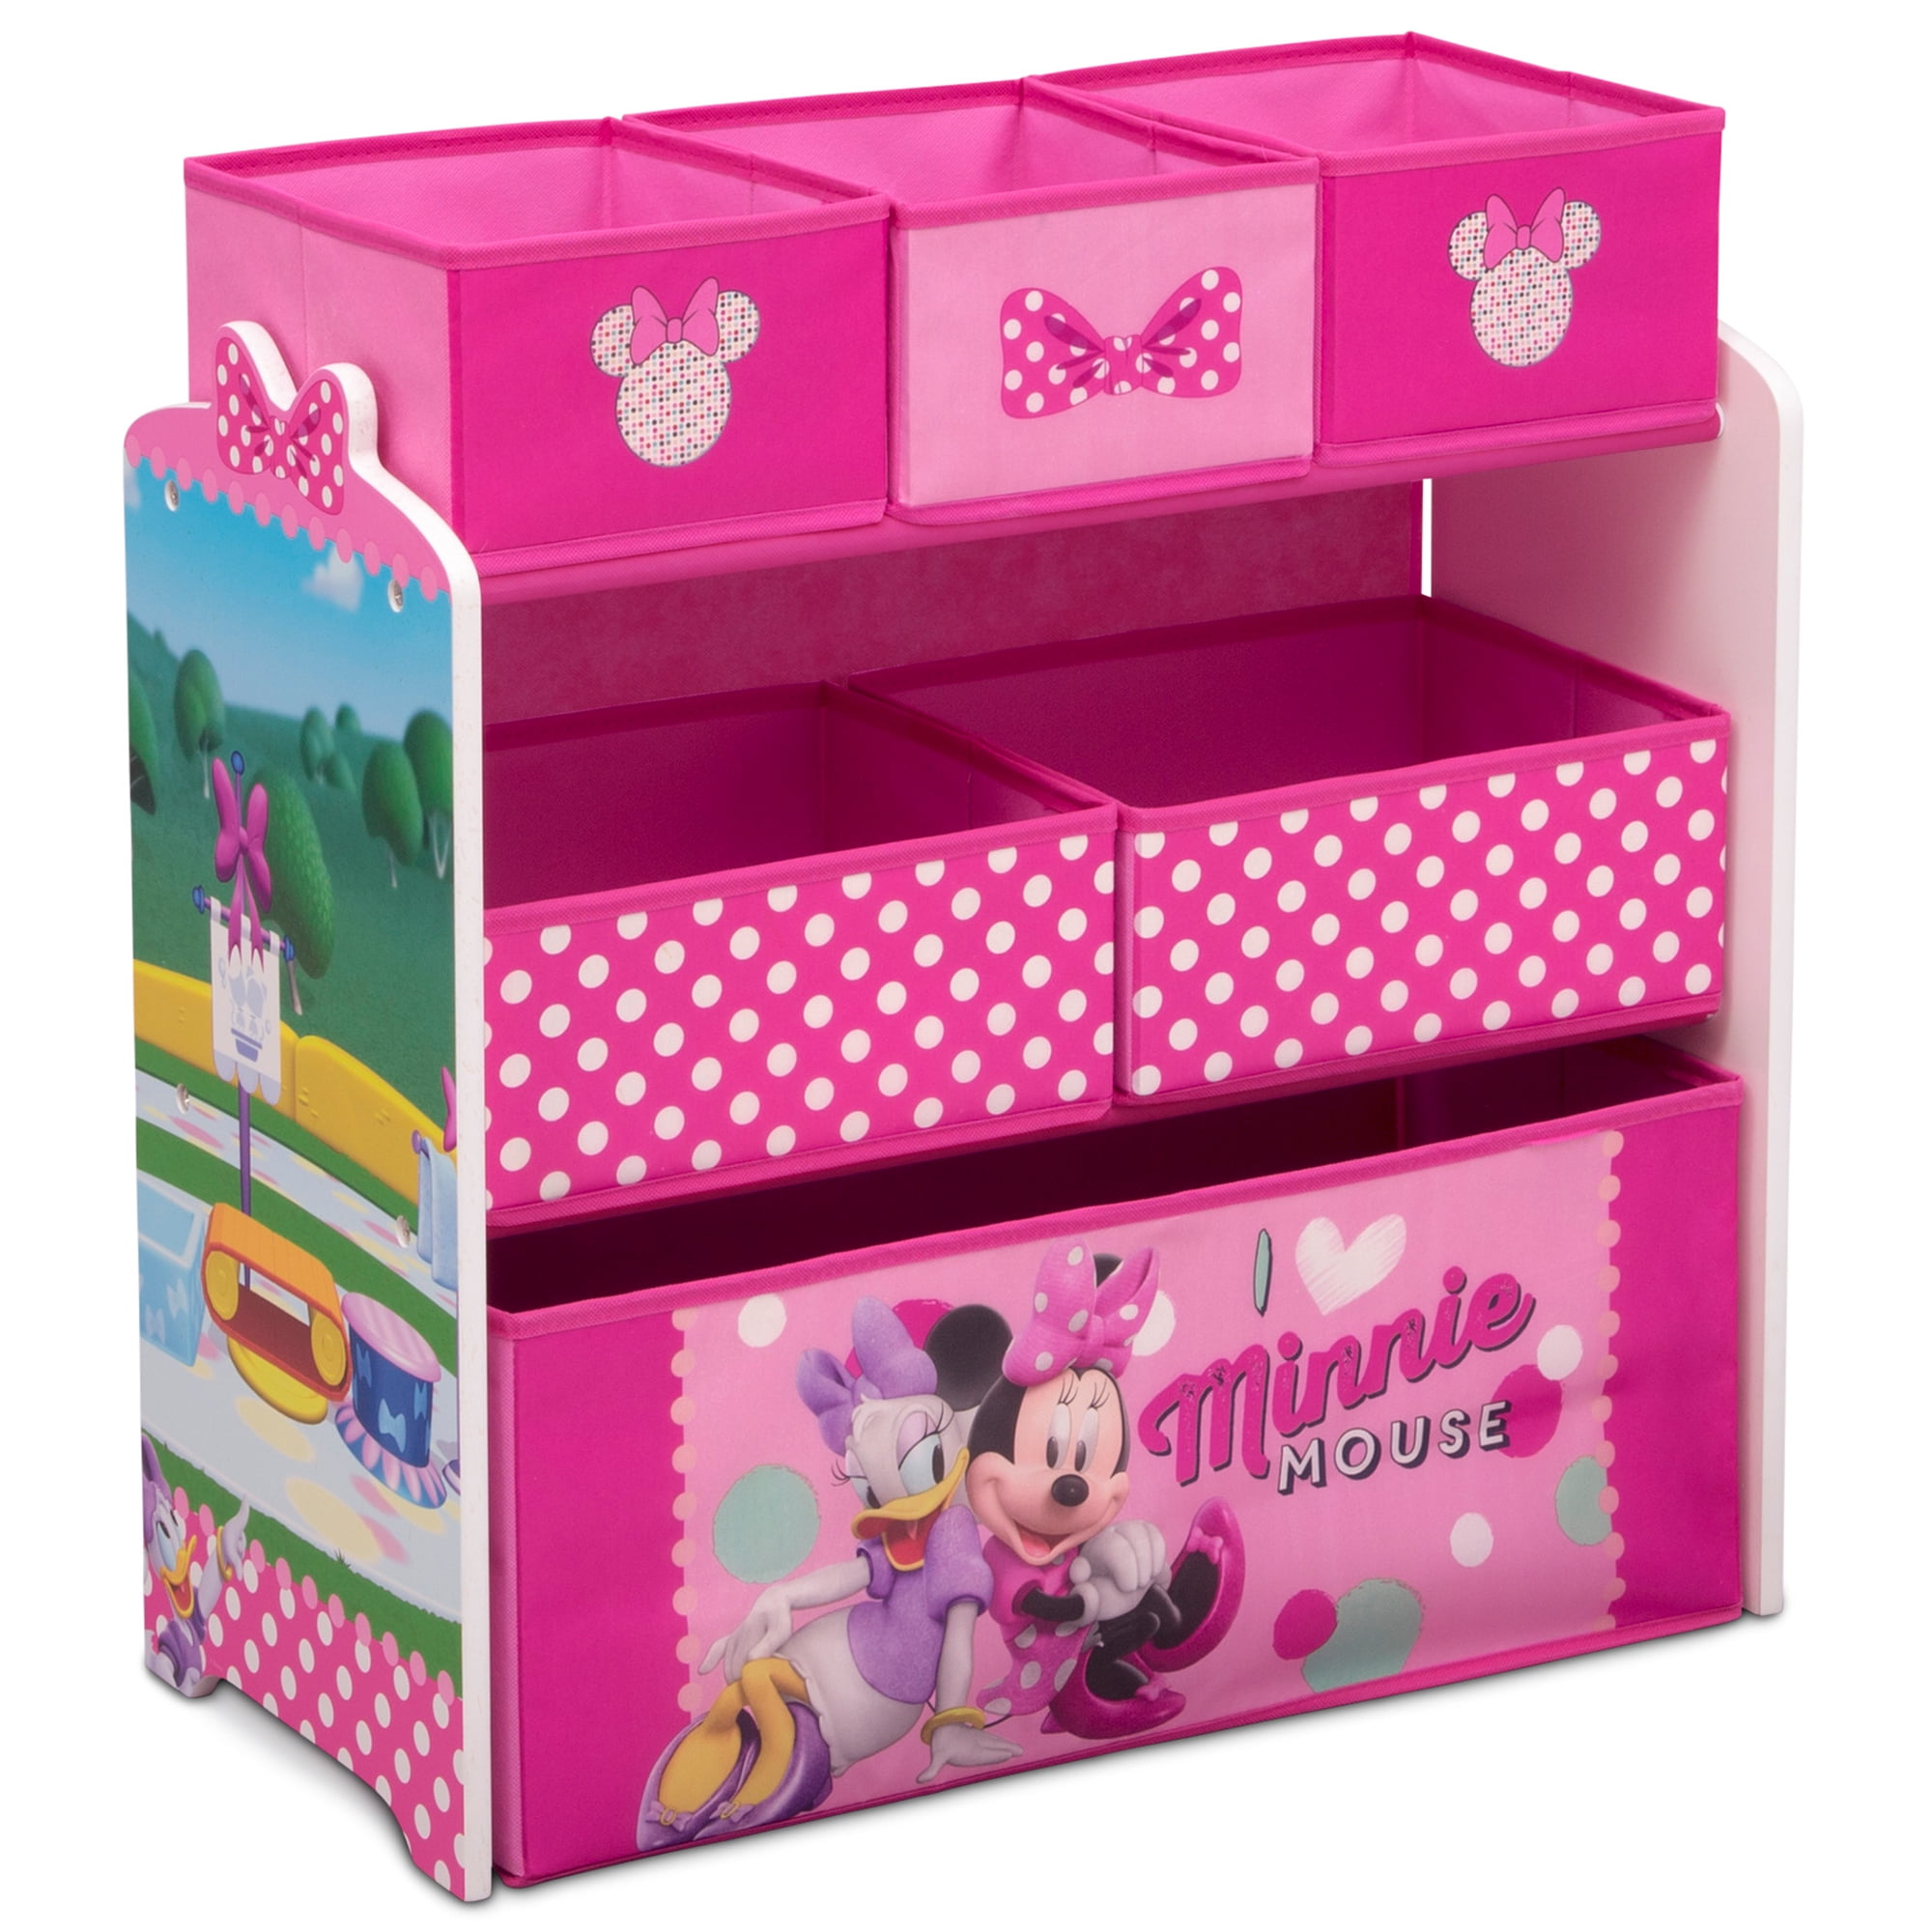 Disney Minnie Mouse 6 Bin Toy Organizer By Delta Children 